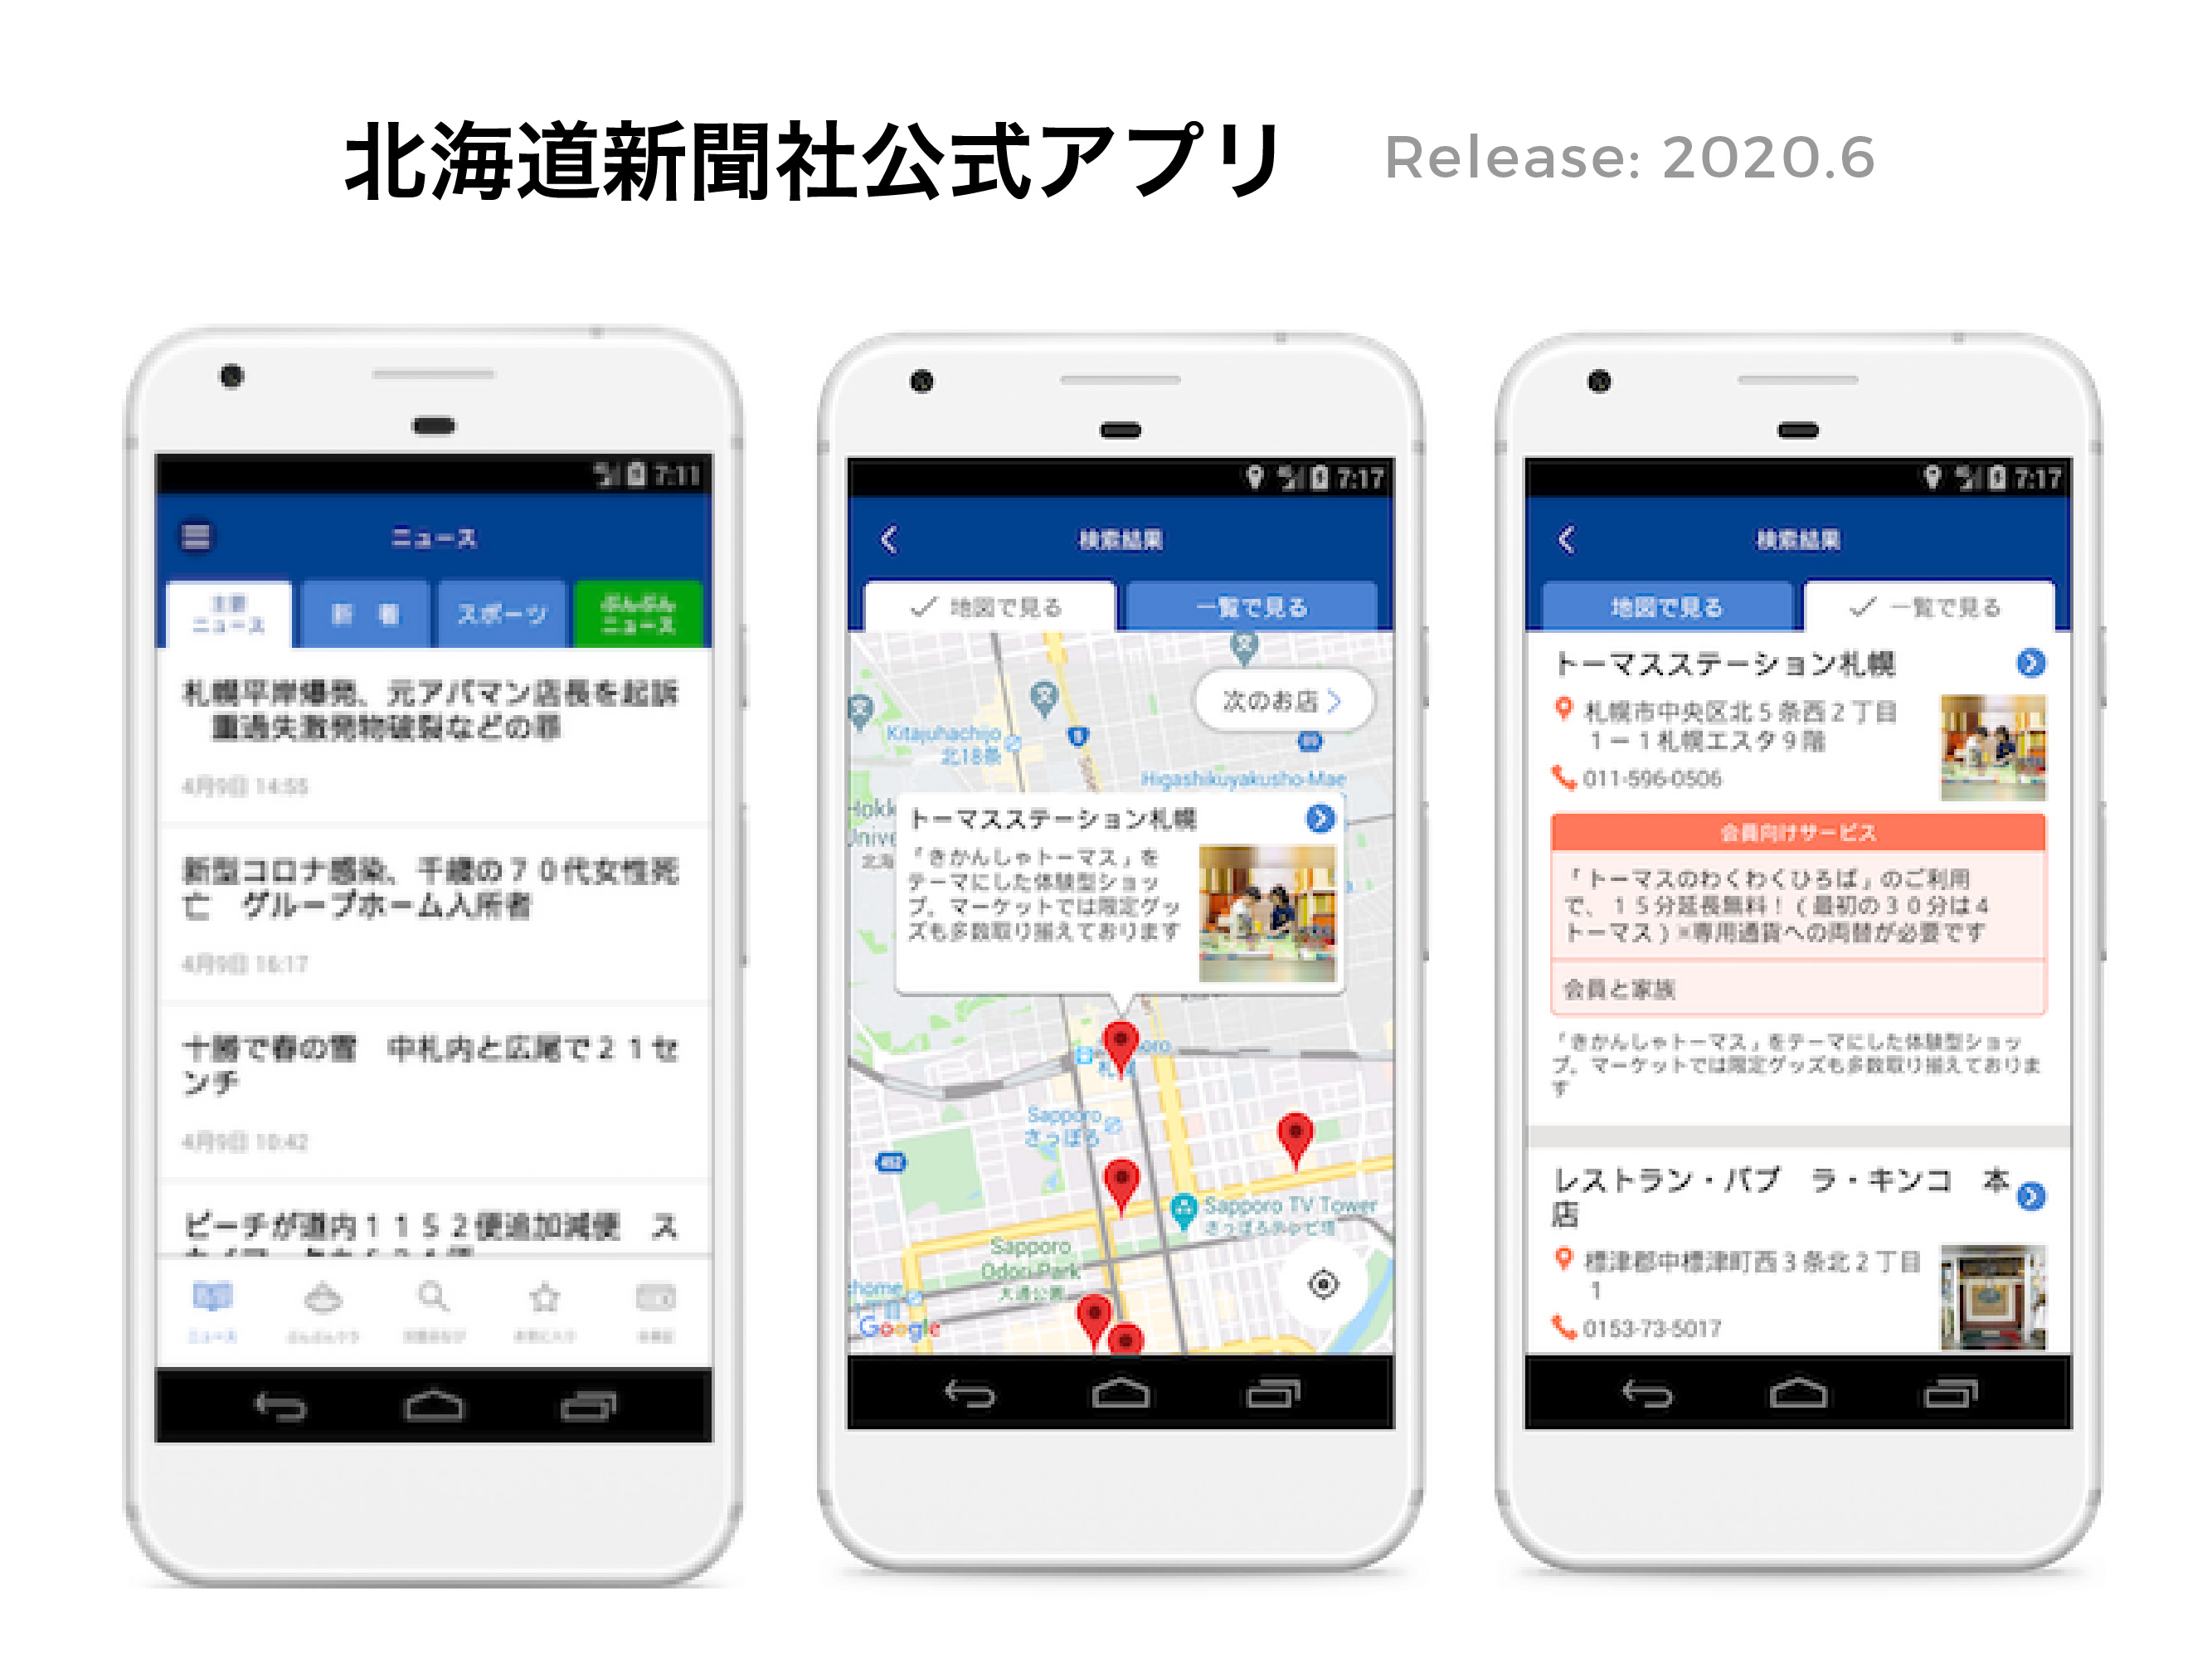 クライアントの要望に対して柔軟に対応し開発した北海道を代表する新聞社の公式アプリ